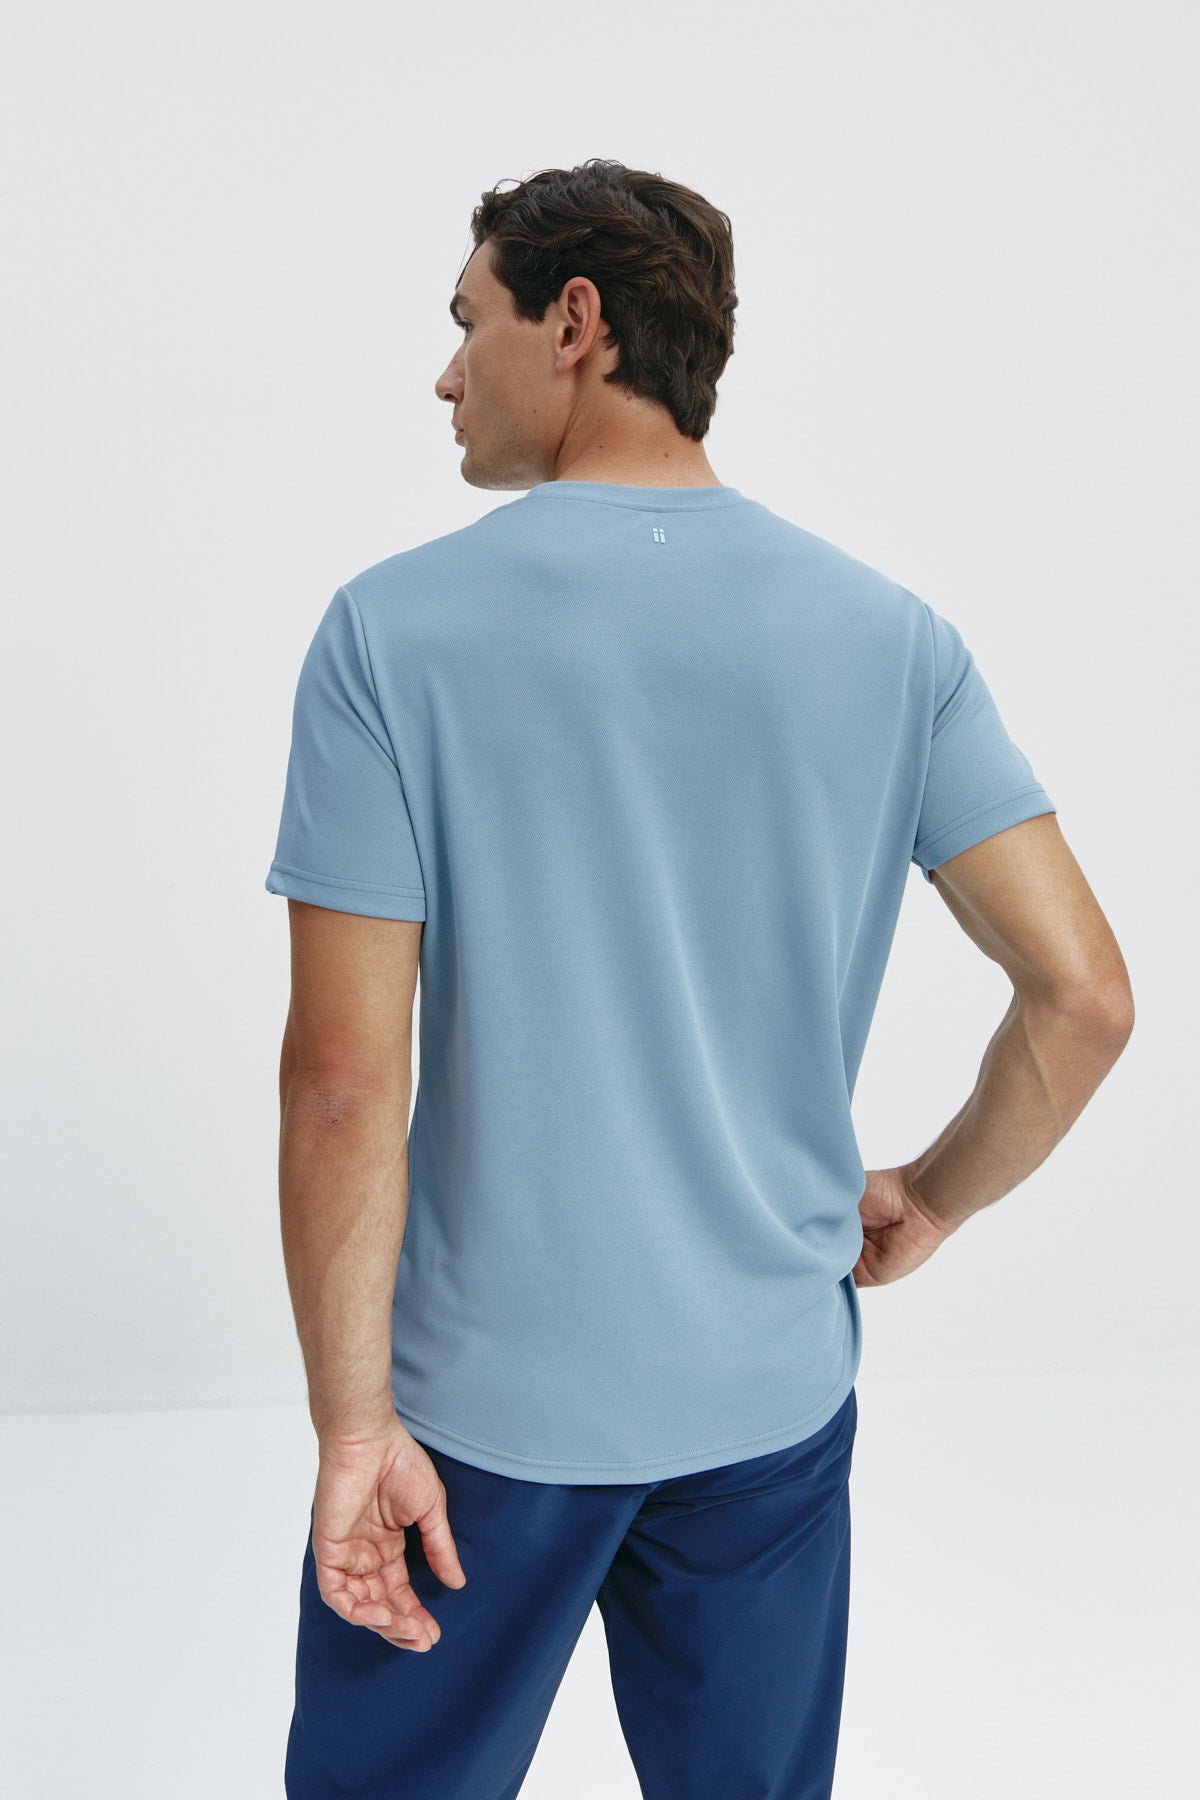 Camiseta de hombre en azul medianoche de Sepiia, estilo y comodidad en una prenda duradera. Foto espalda